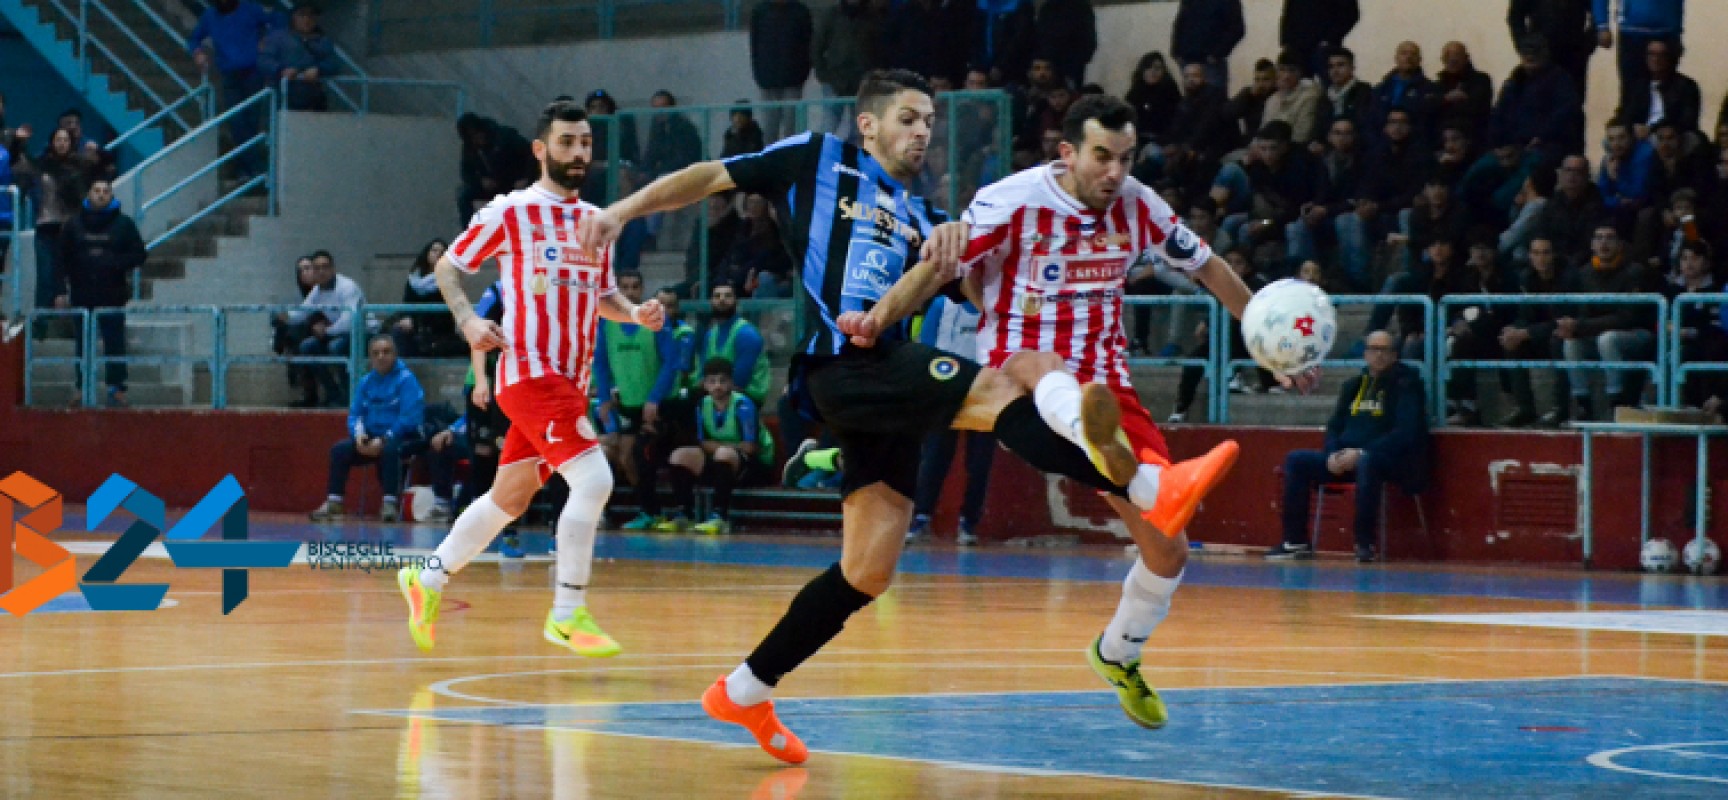 Futsal Bisceglie: ancora segno x, fermato in casa dal Cristian Barletta